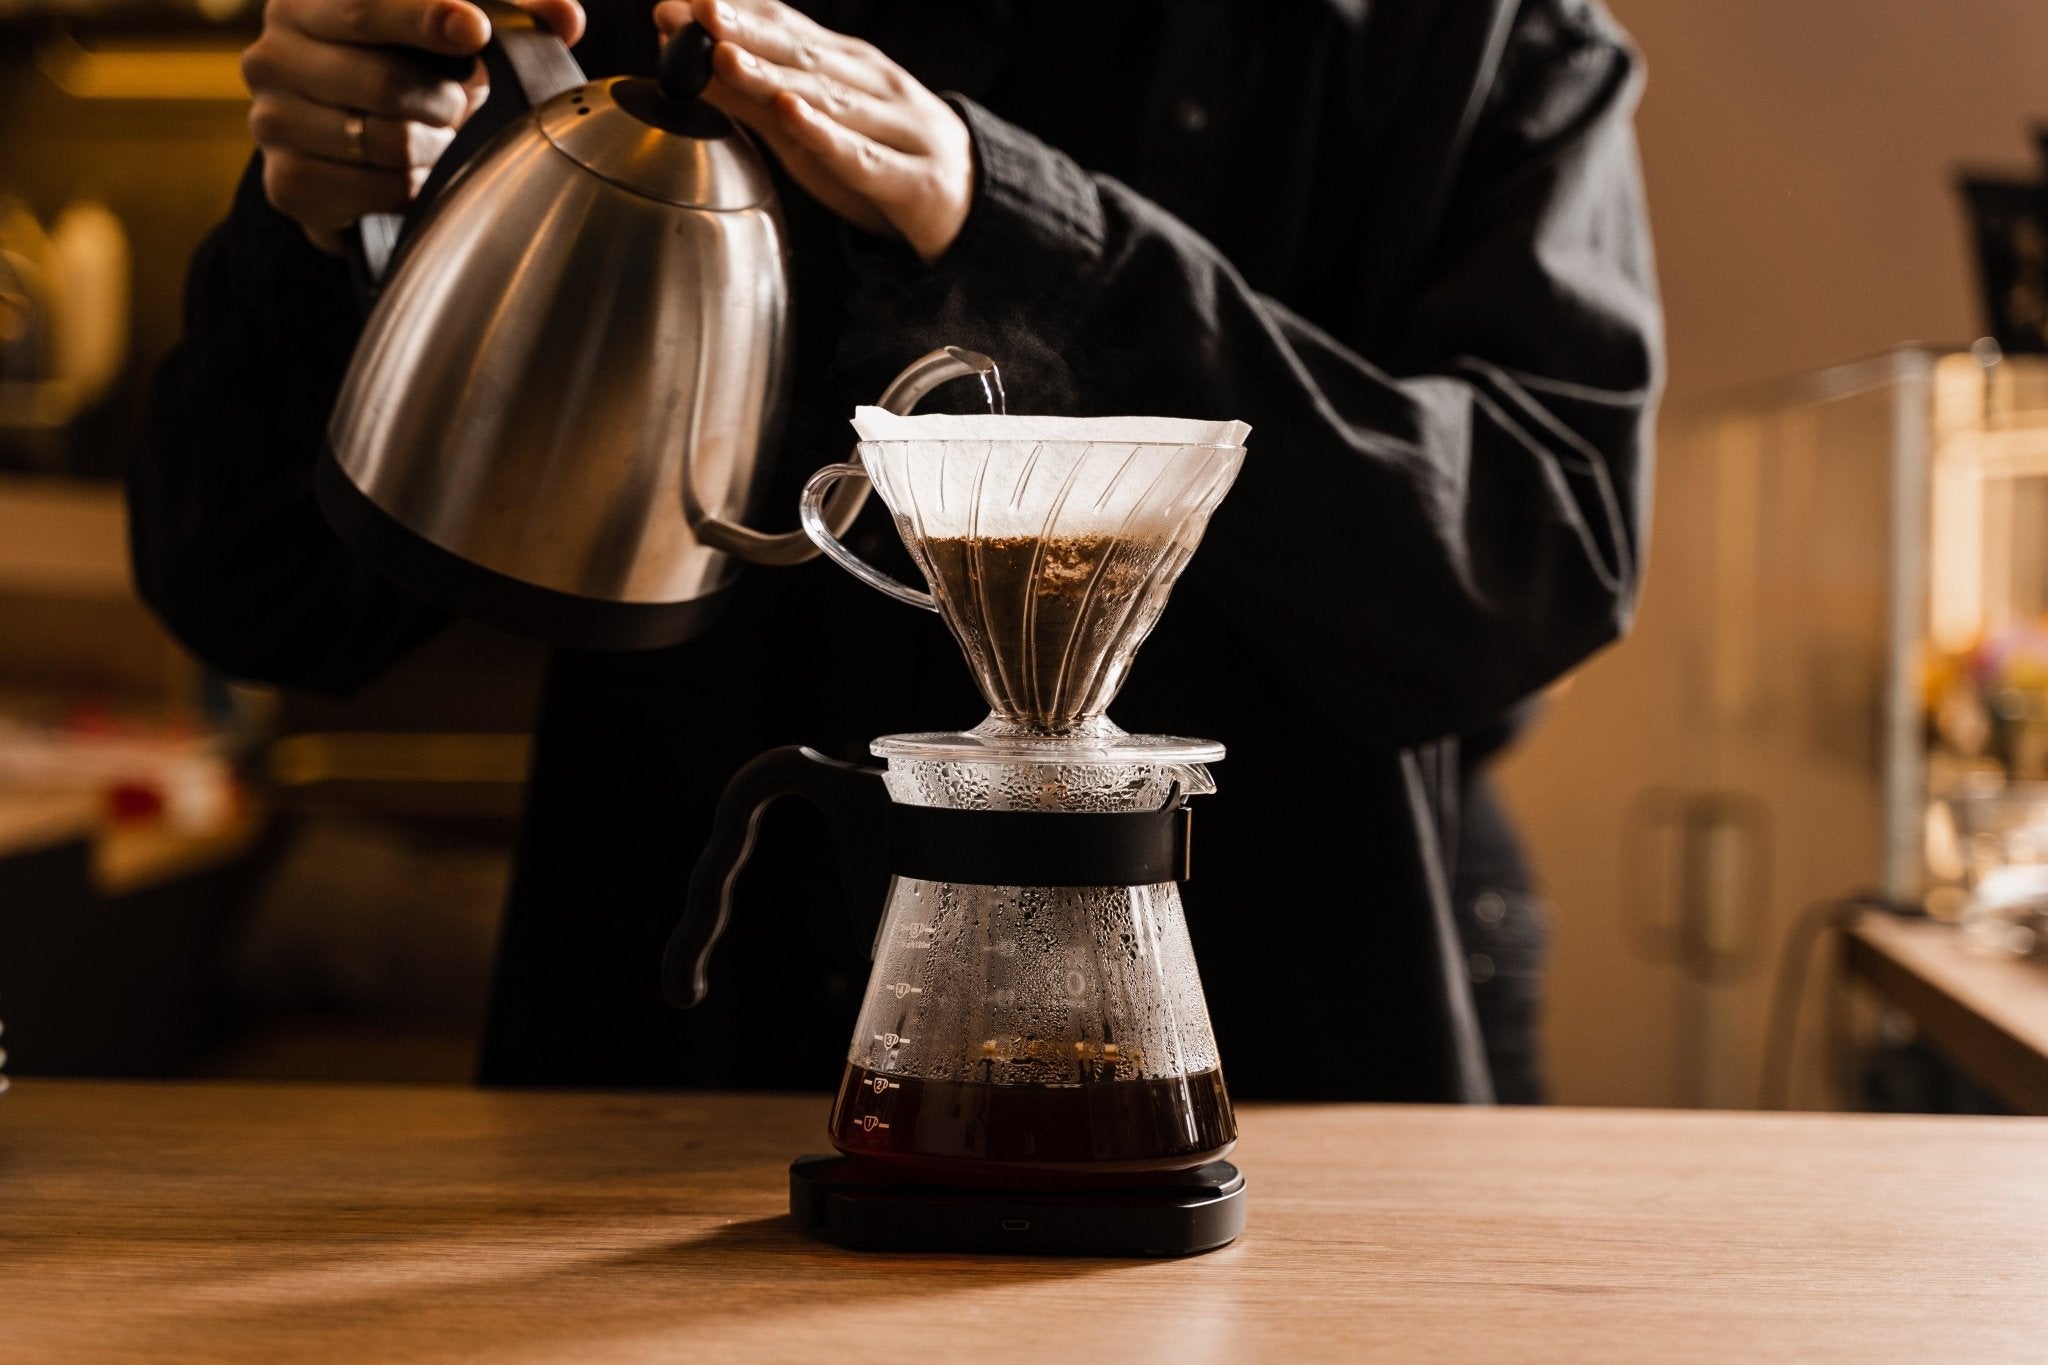 Cómo Preparar Café con Cafetera V60: Una Guía Detallada